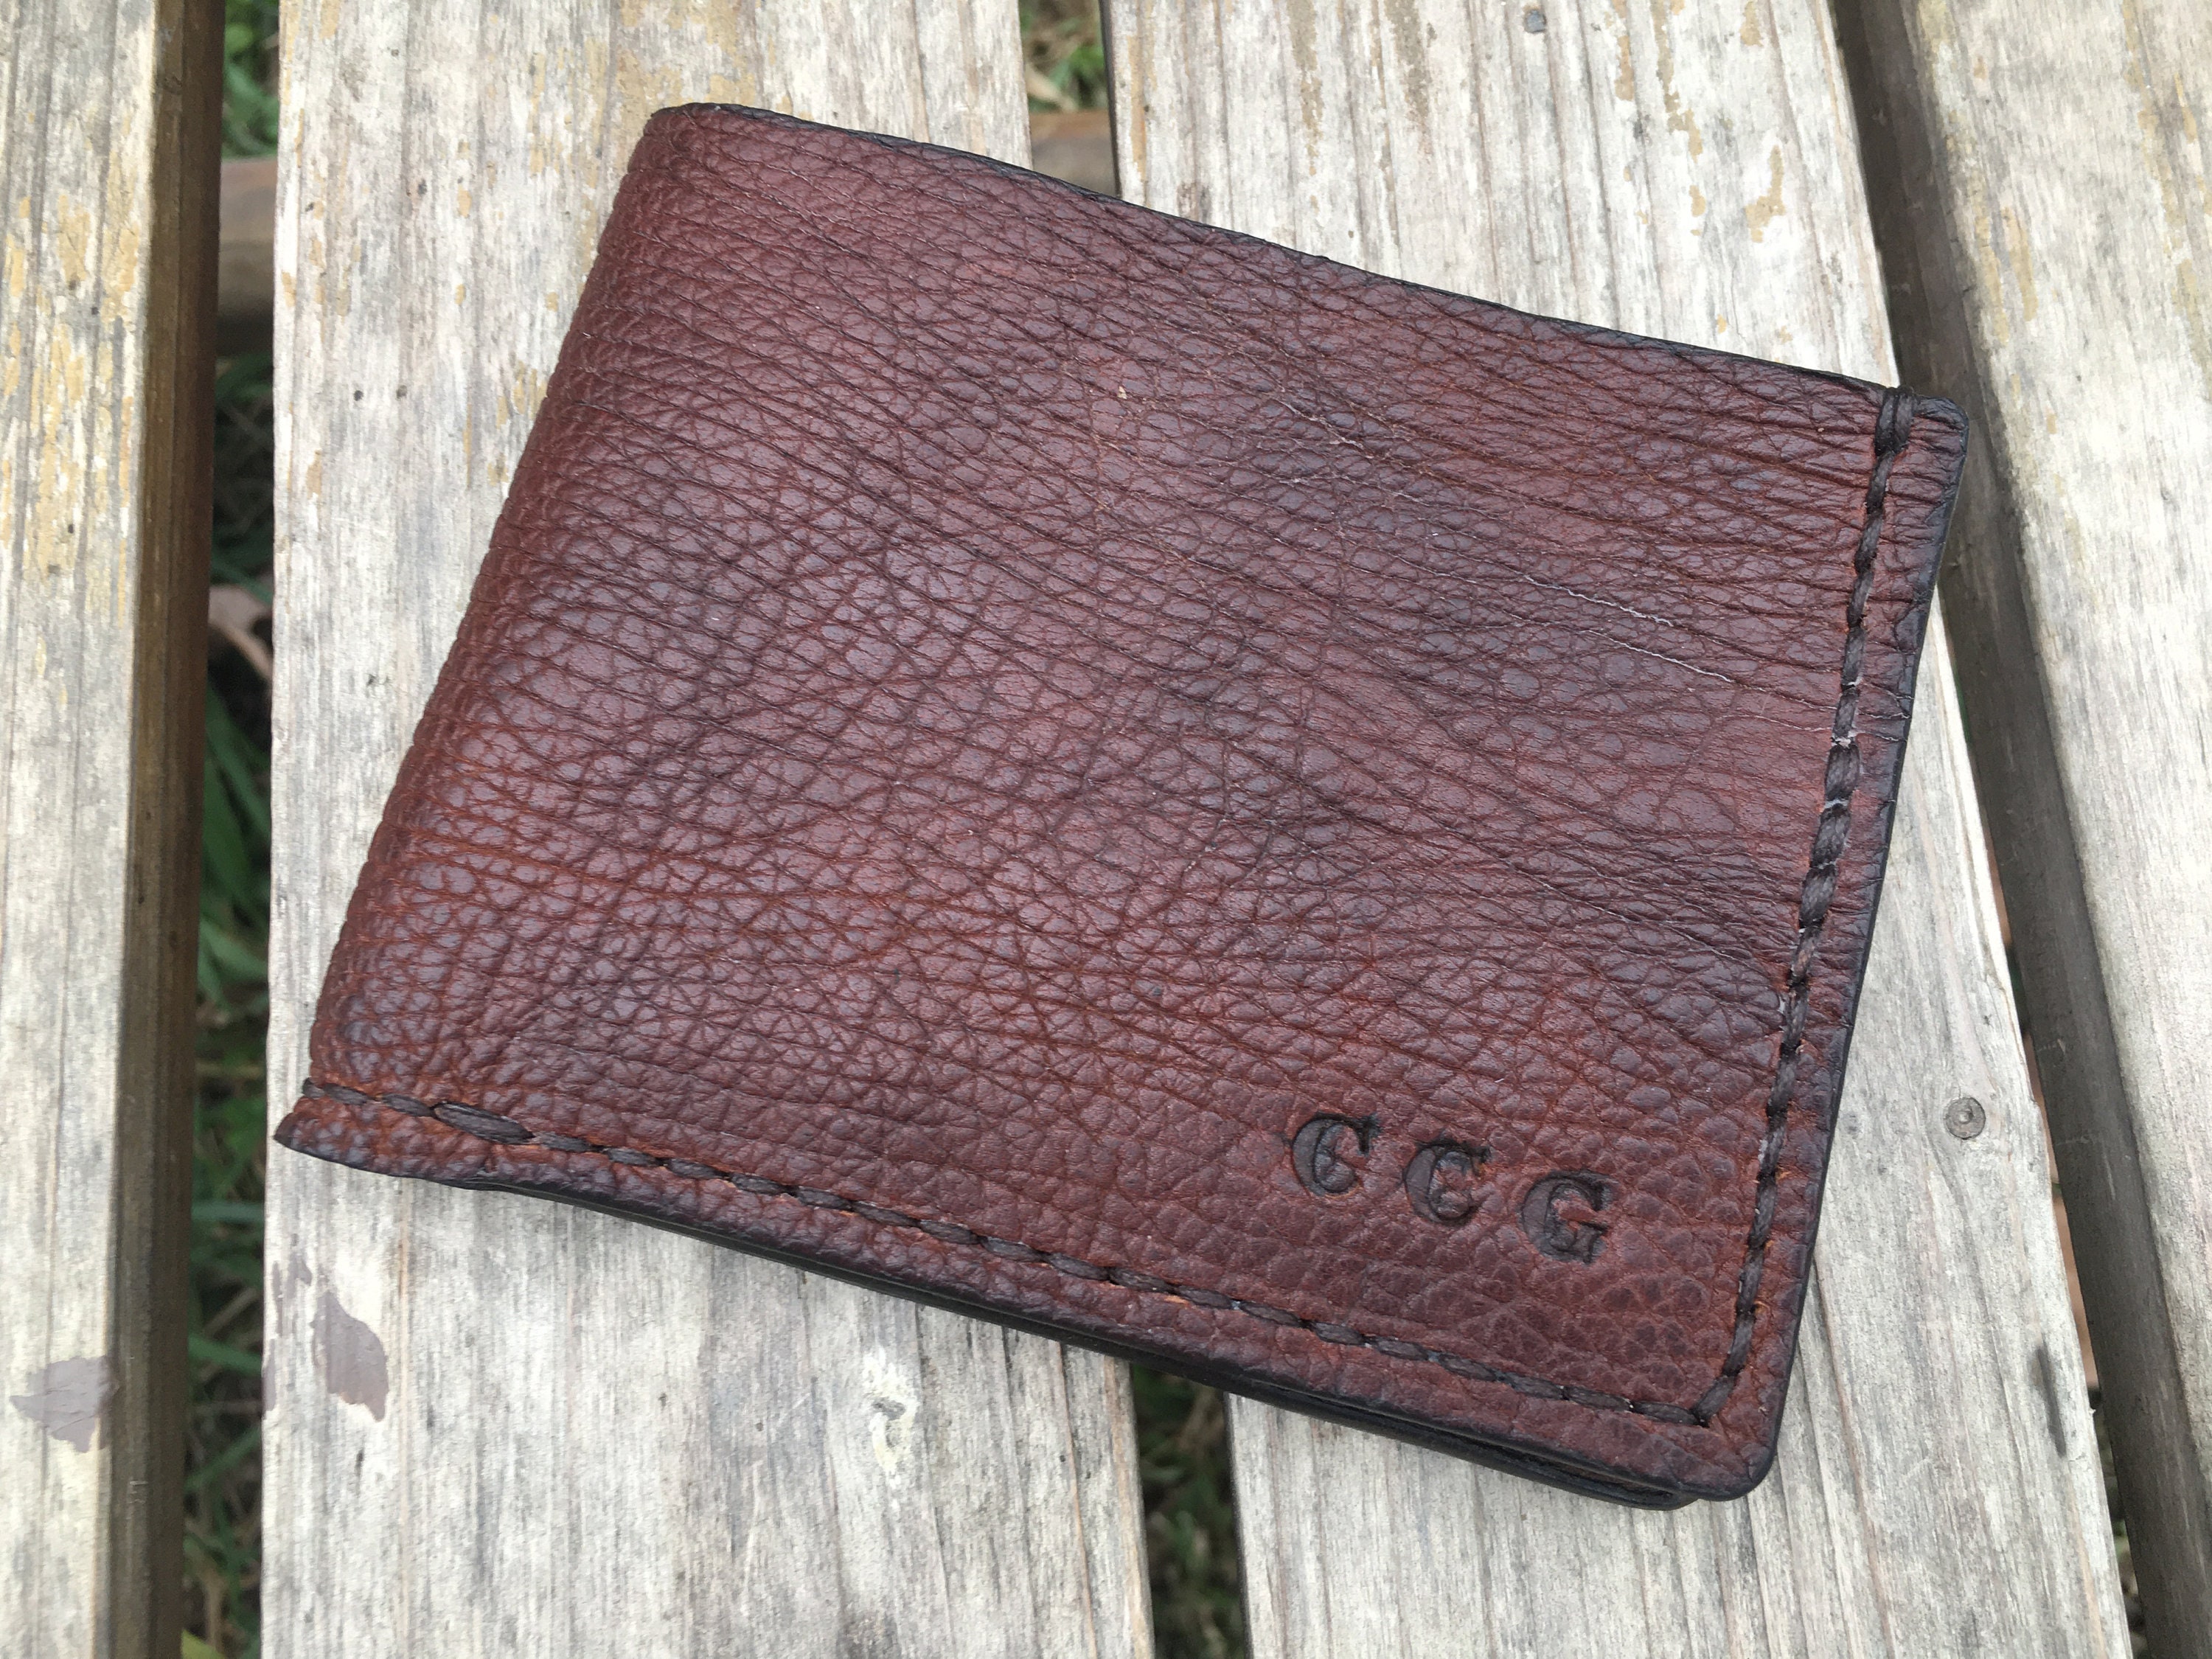 Custom Wallet